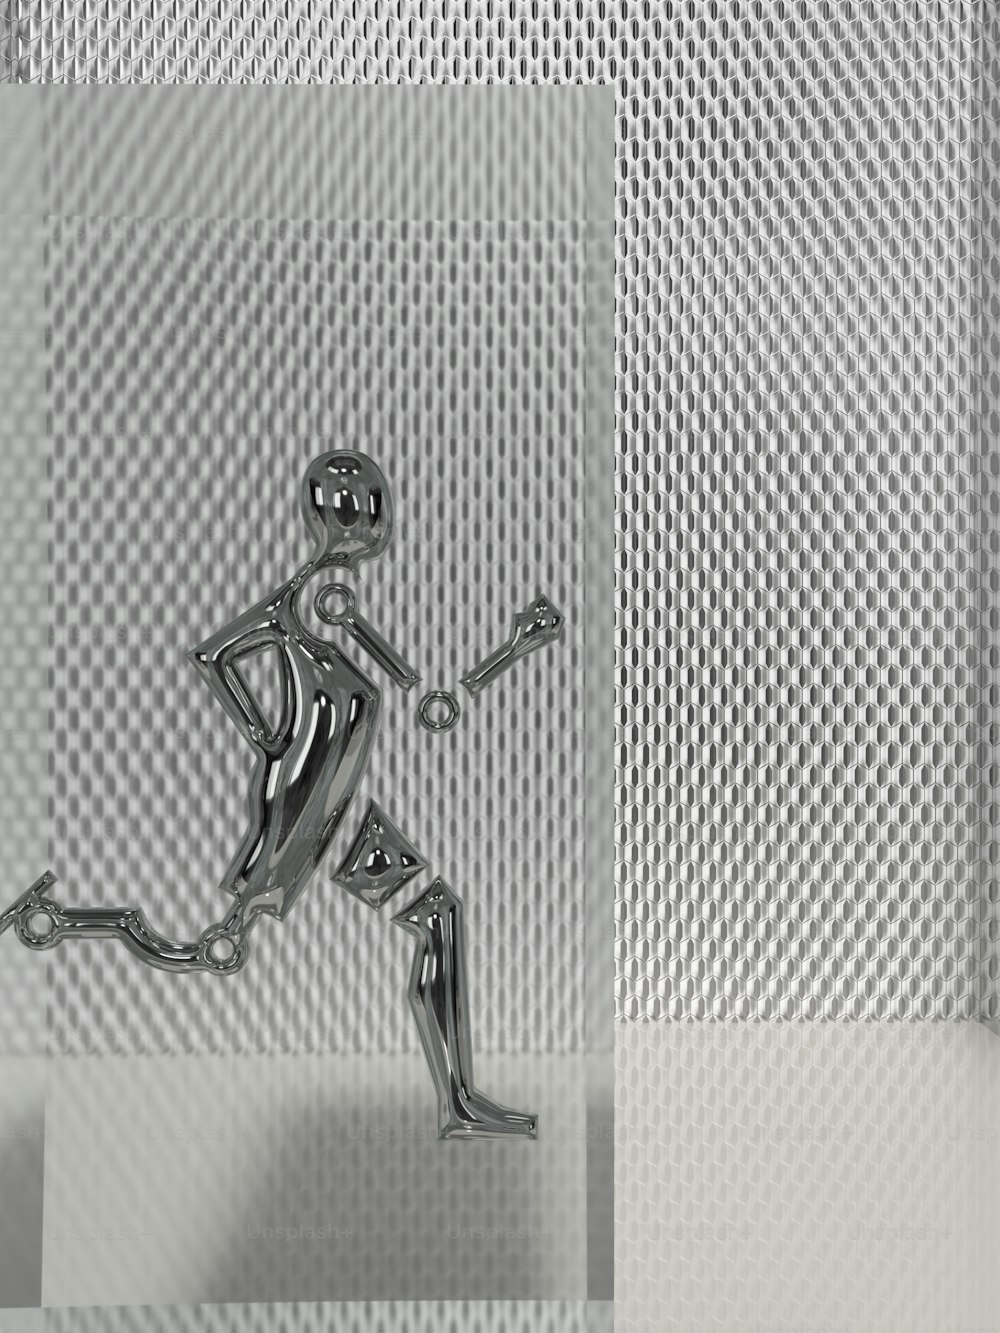 Una figura di metallo è in esecuzione su uno sfondo bianco